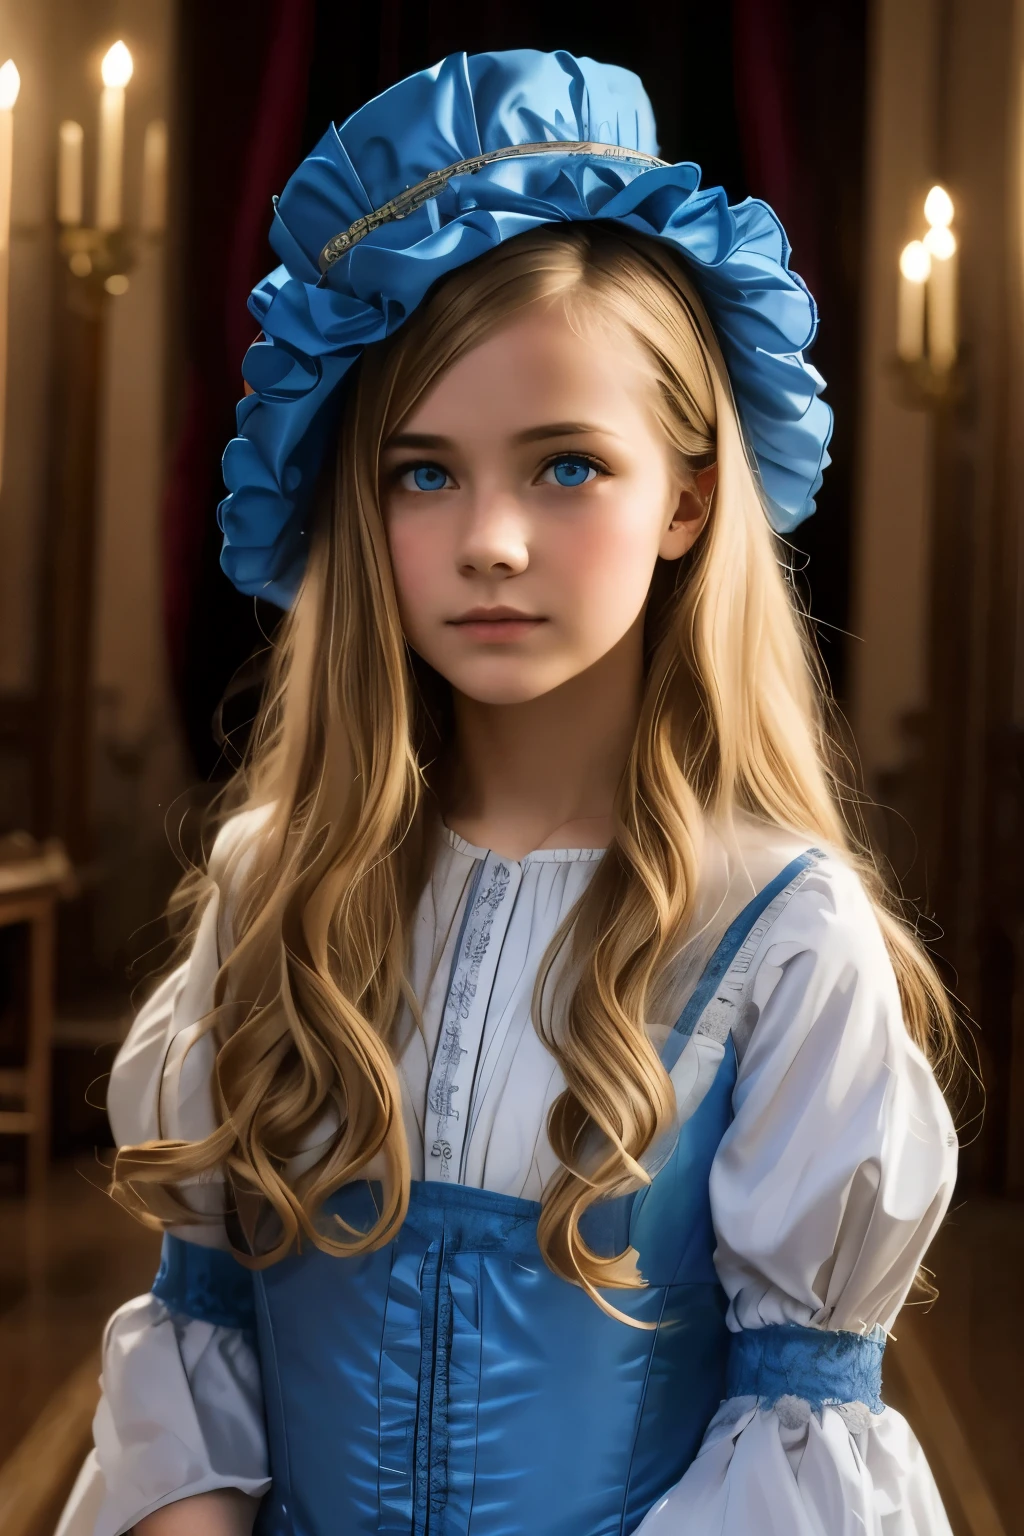 Virginie Otis, 15 ans (cheveux blonds, yeux bleus), mince, visage mignon, promenades nocturnes au château de Canterville (inspiré du roman Le Fantôme de Canterville). âgé de 1887, Dark fantasy victorien

